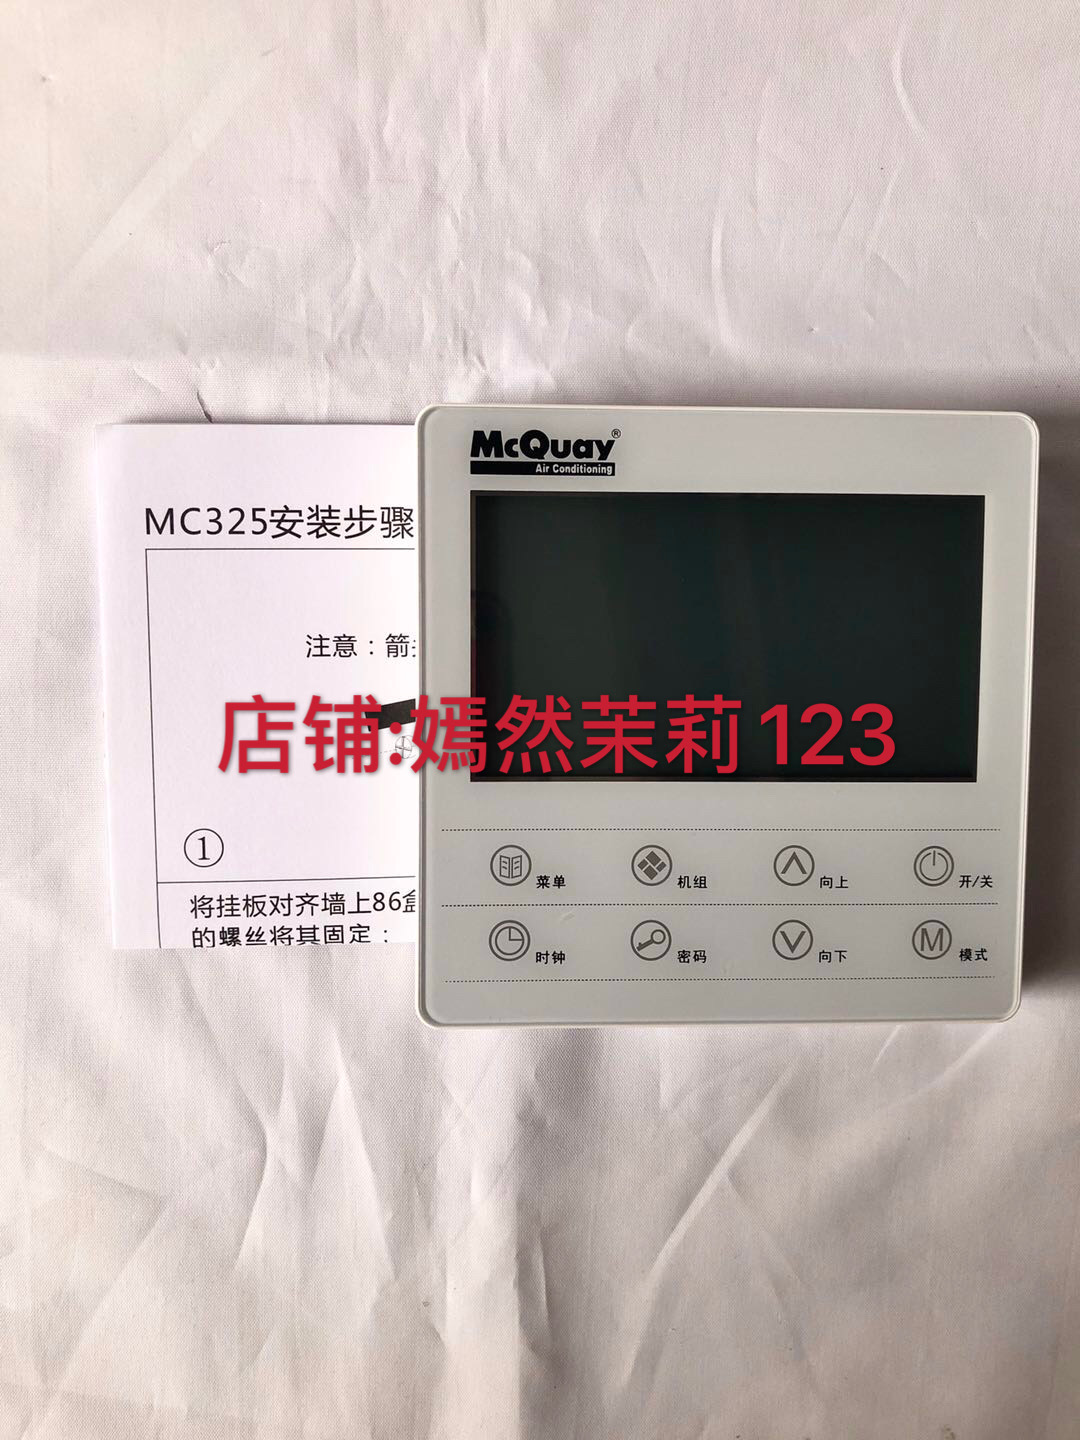 MC Quay麦克维尔 触屏控制器变频空调线控器MC325空调手操器面板